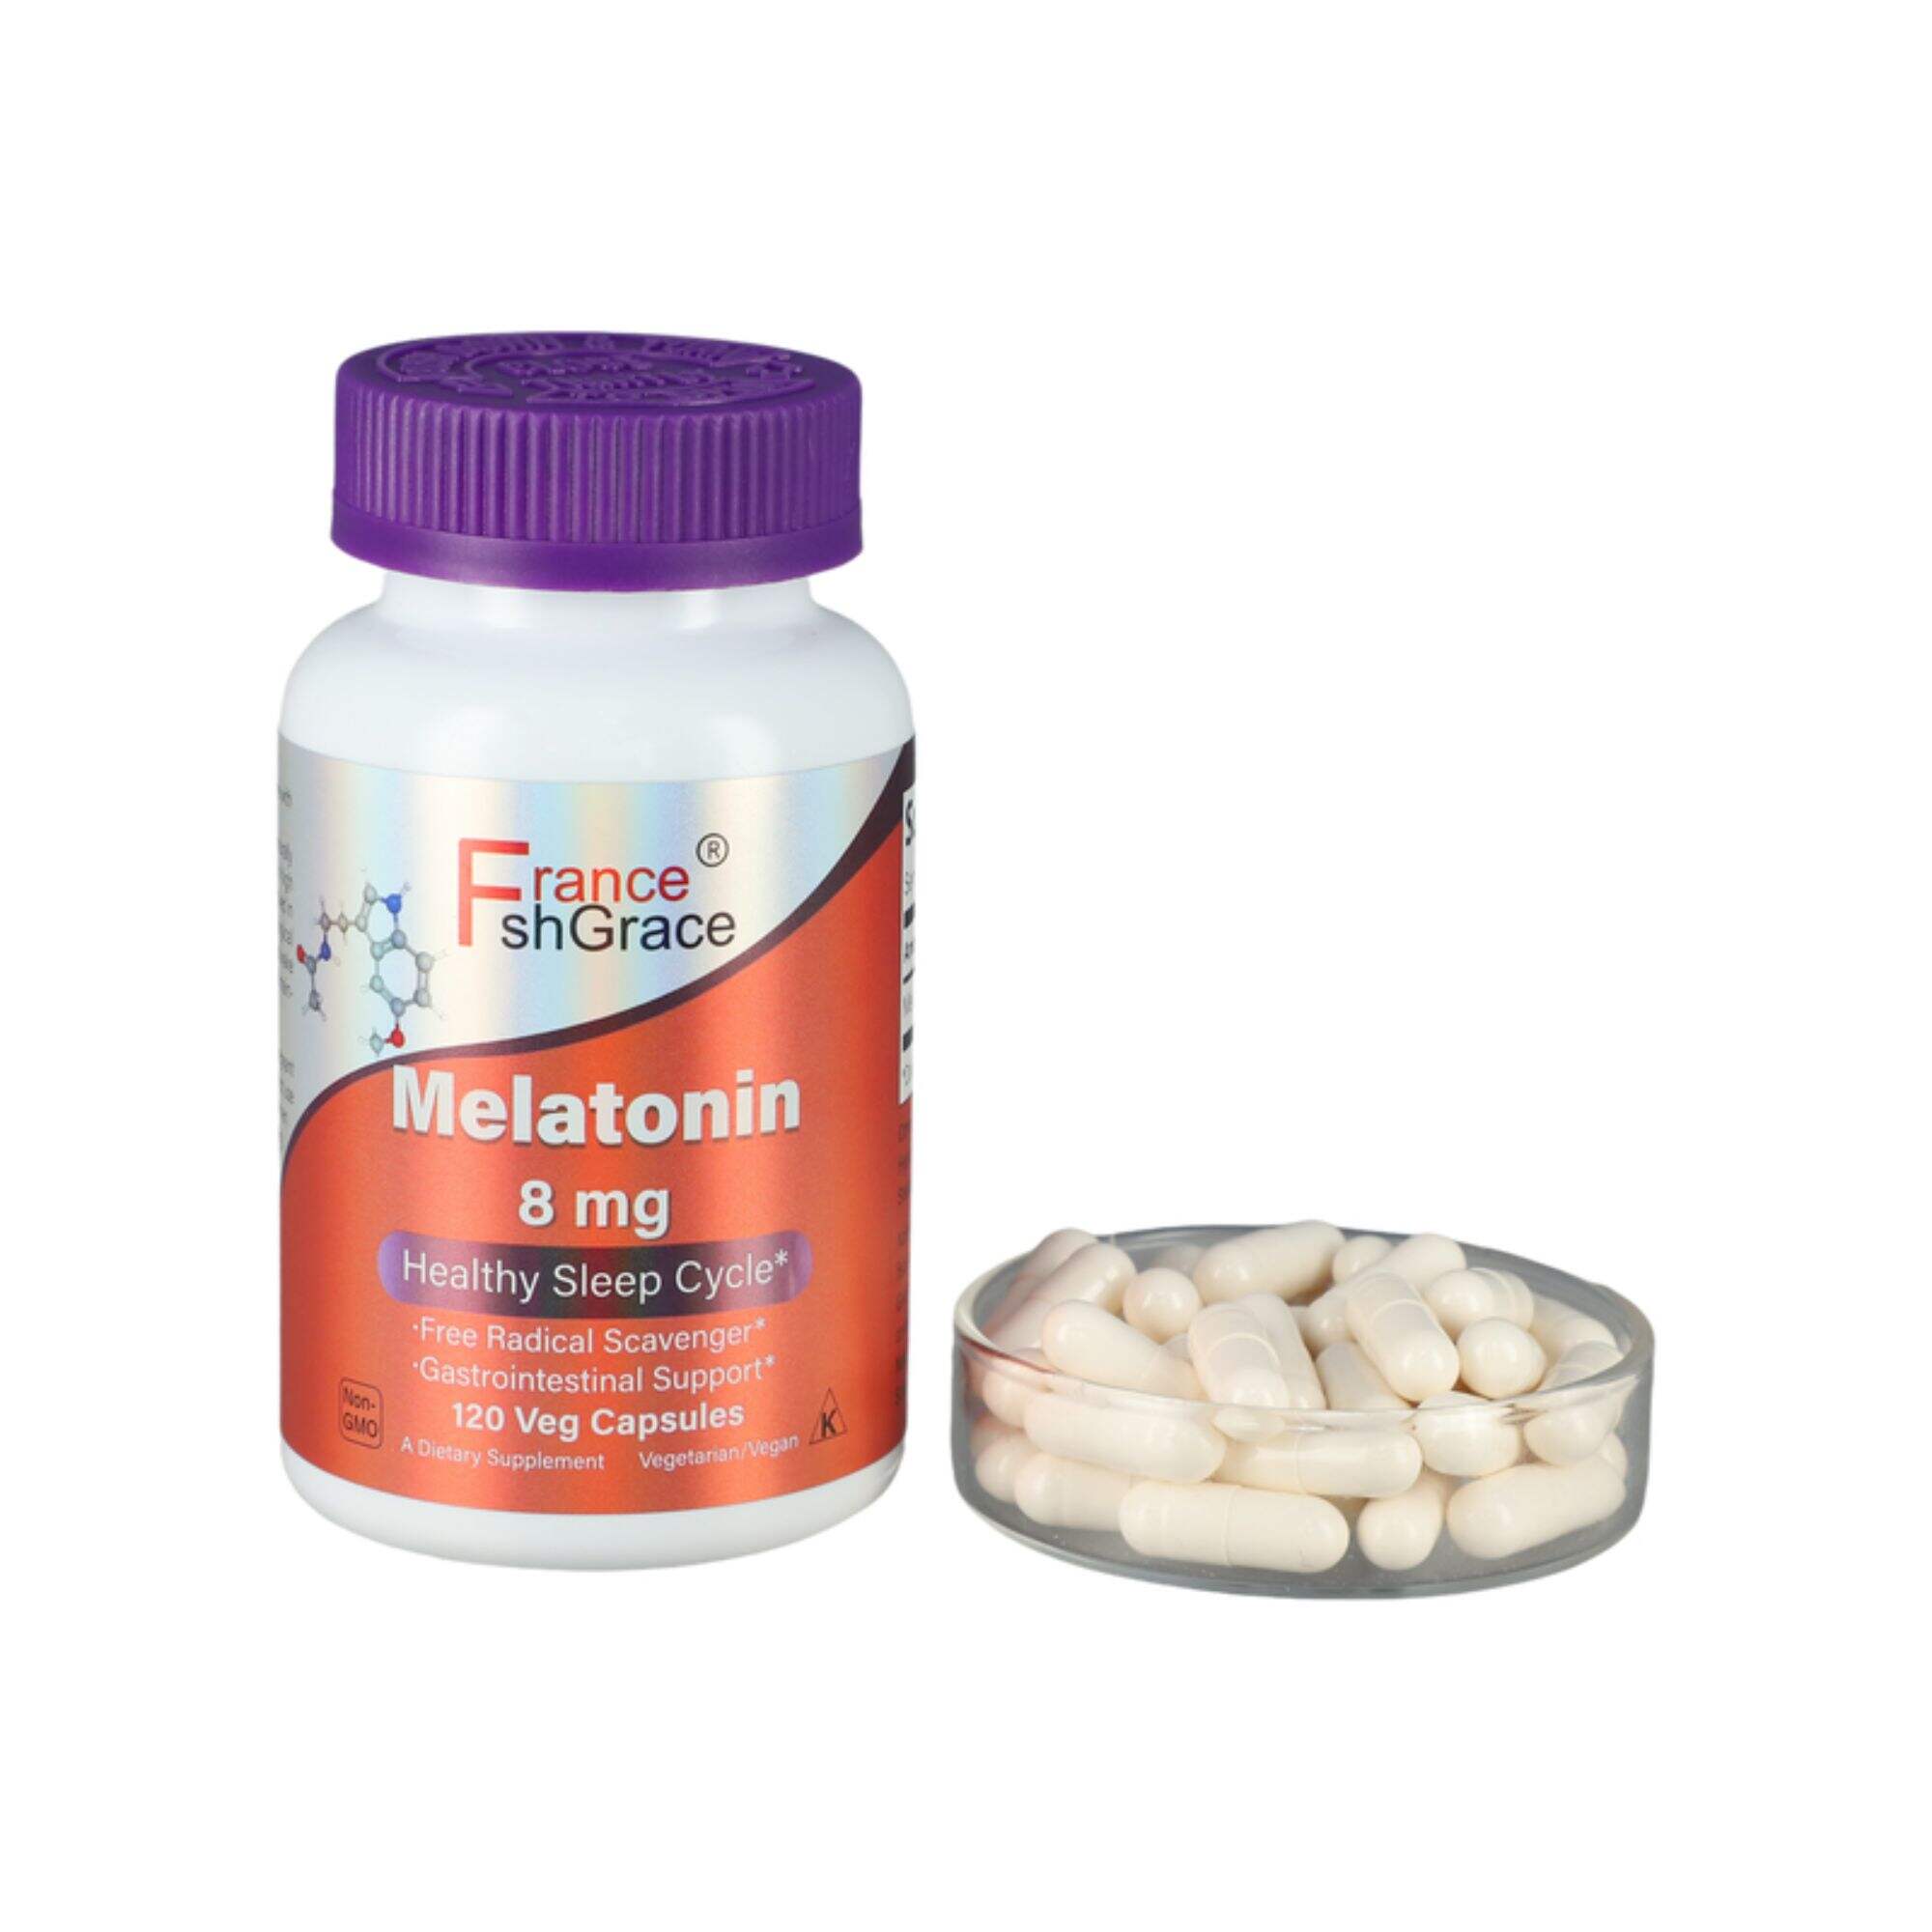 Melatonin capsules sleep aid